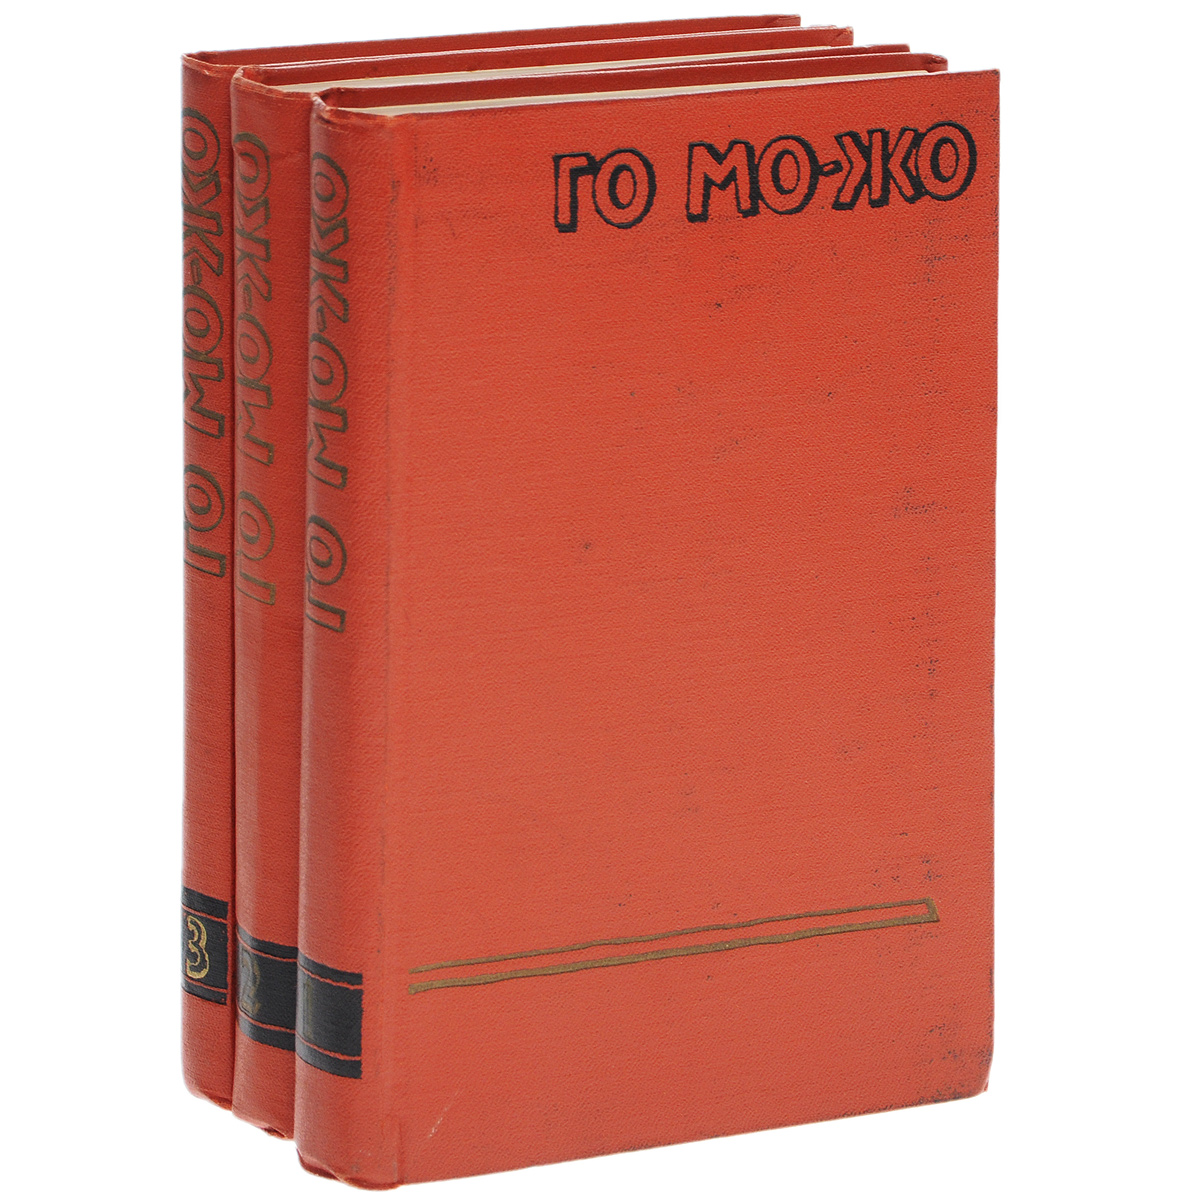 Го Мо-Жо. Сочинения в 3 томах (комплект из 3 книг)